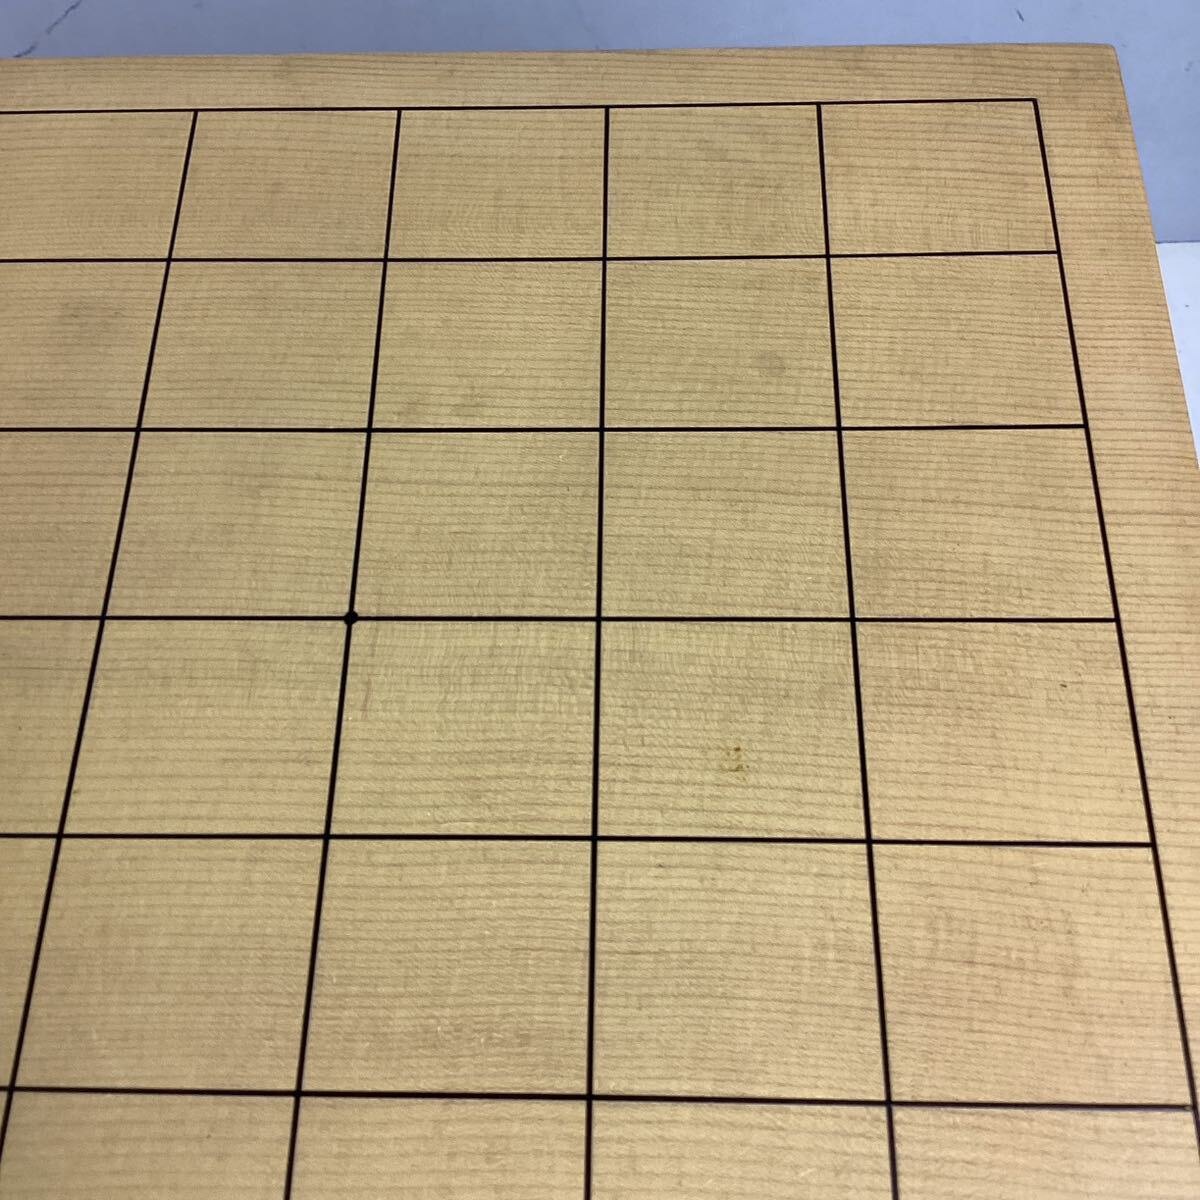 o527 将棋盤 将棋駒 天童特産 木製 へそあり 脚付き 厚み17.5cm 中古の画像3